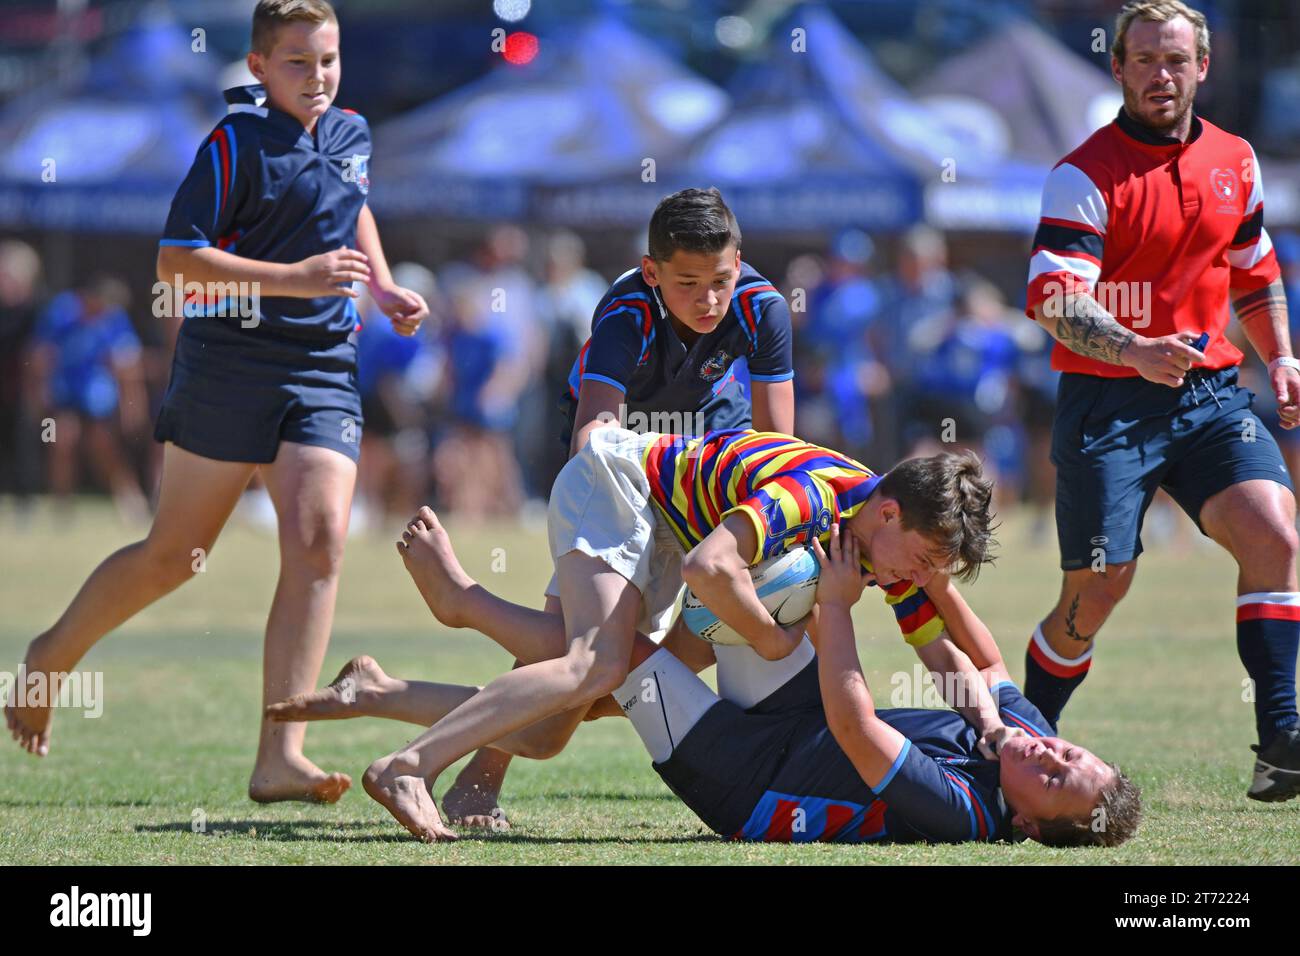 Schuljunge Rugby-Aggression mit einem großen Tackle, was zu einer Verschrottung führt Stockfoto